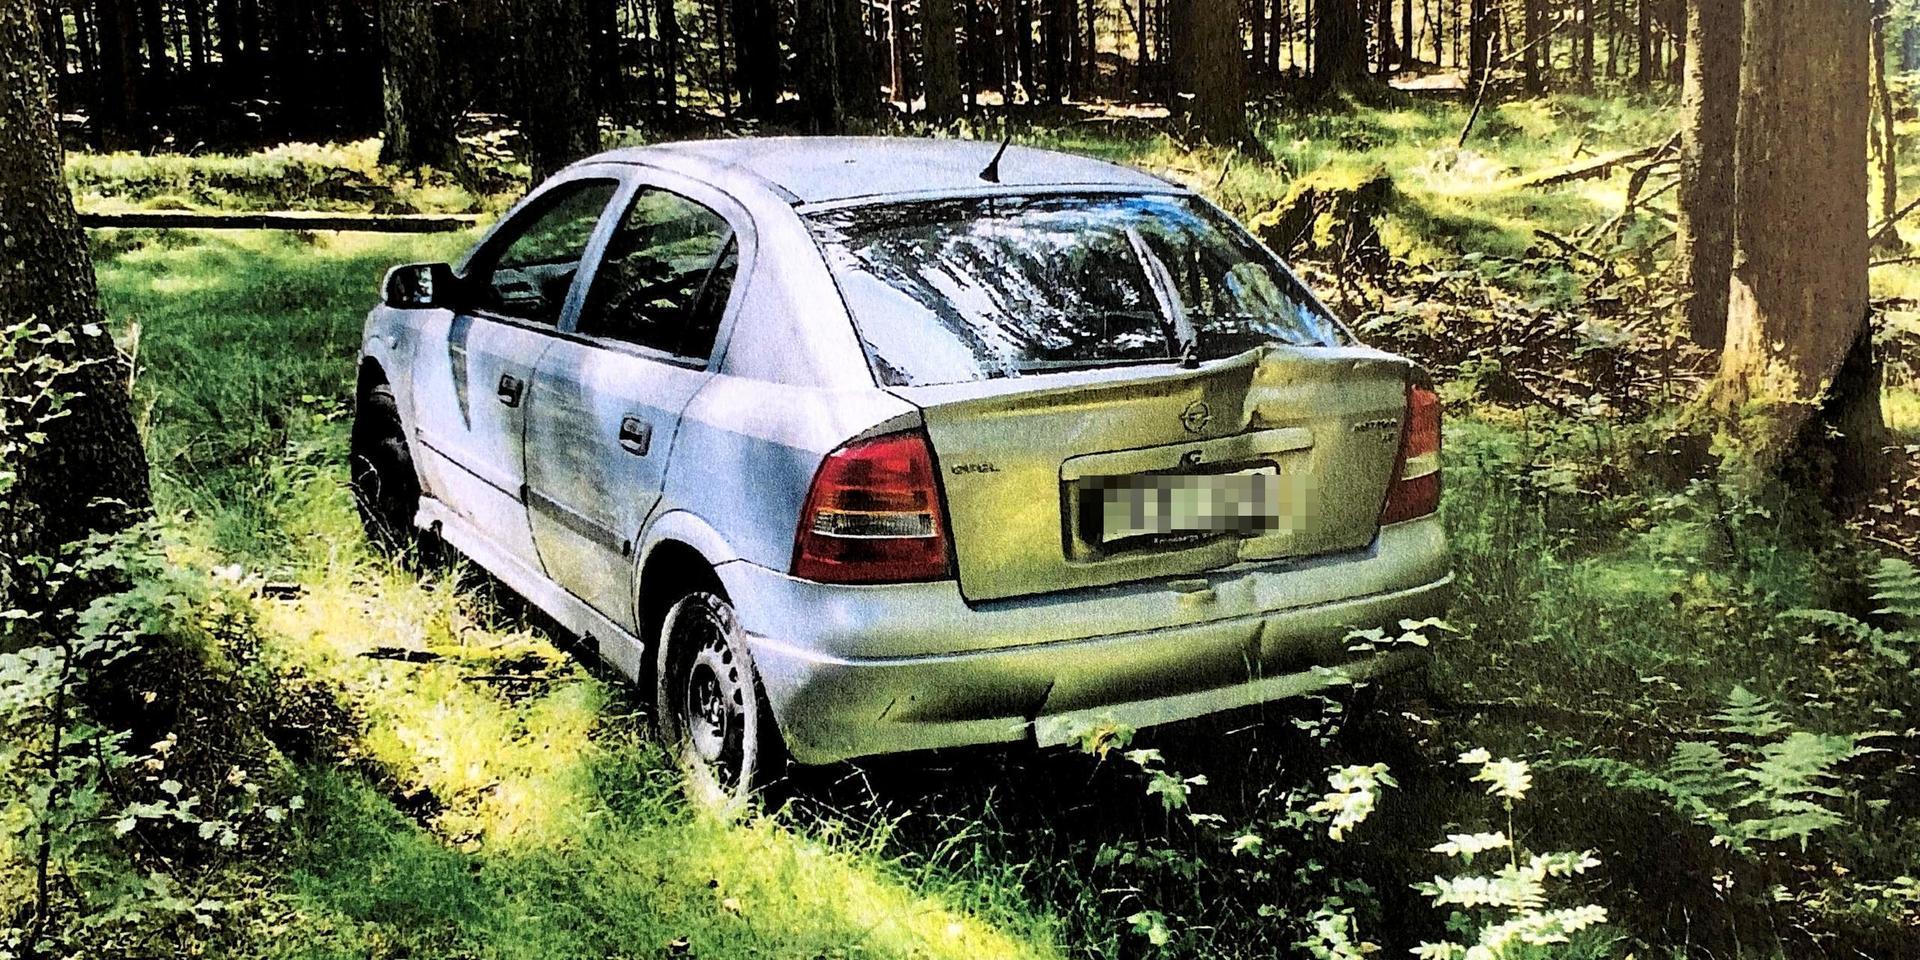 Bil har dumpats i Sveaskogs mark på Hallandsås, i slutet av en skogsväg mellan Pennebo och Kockabygget.